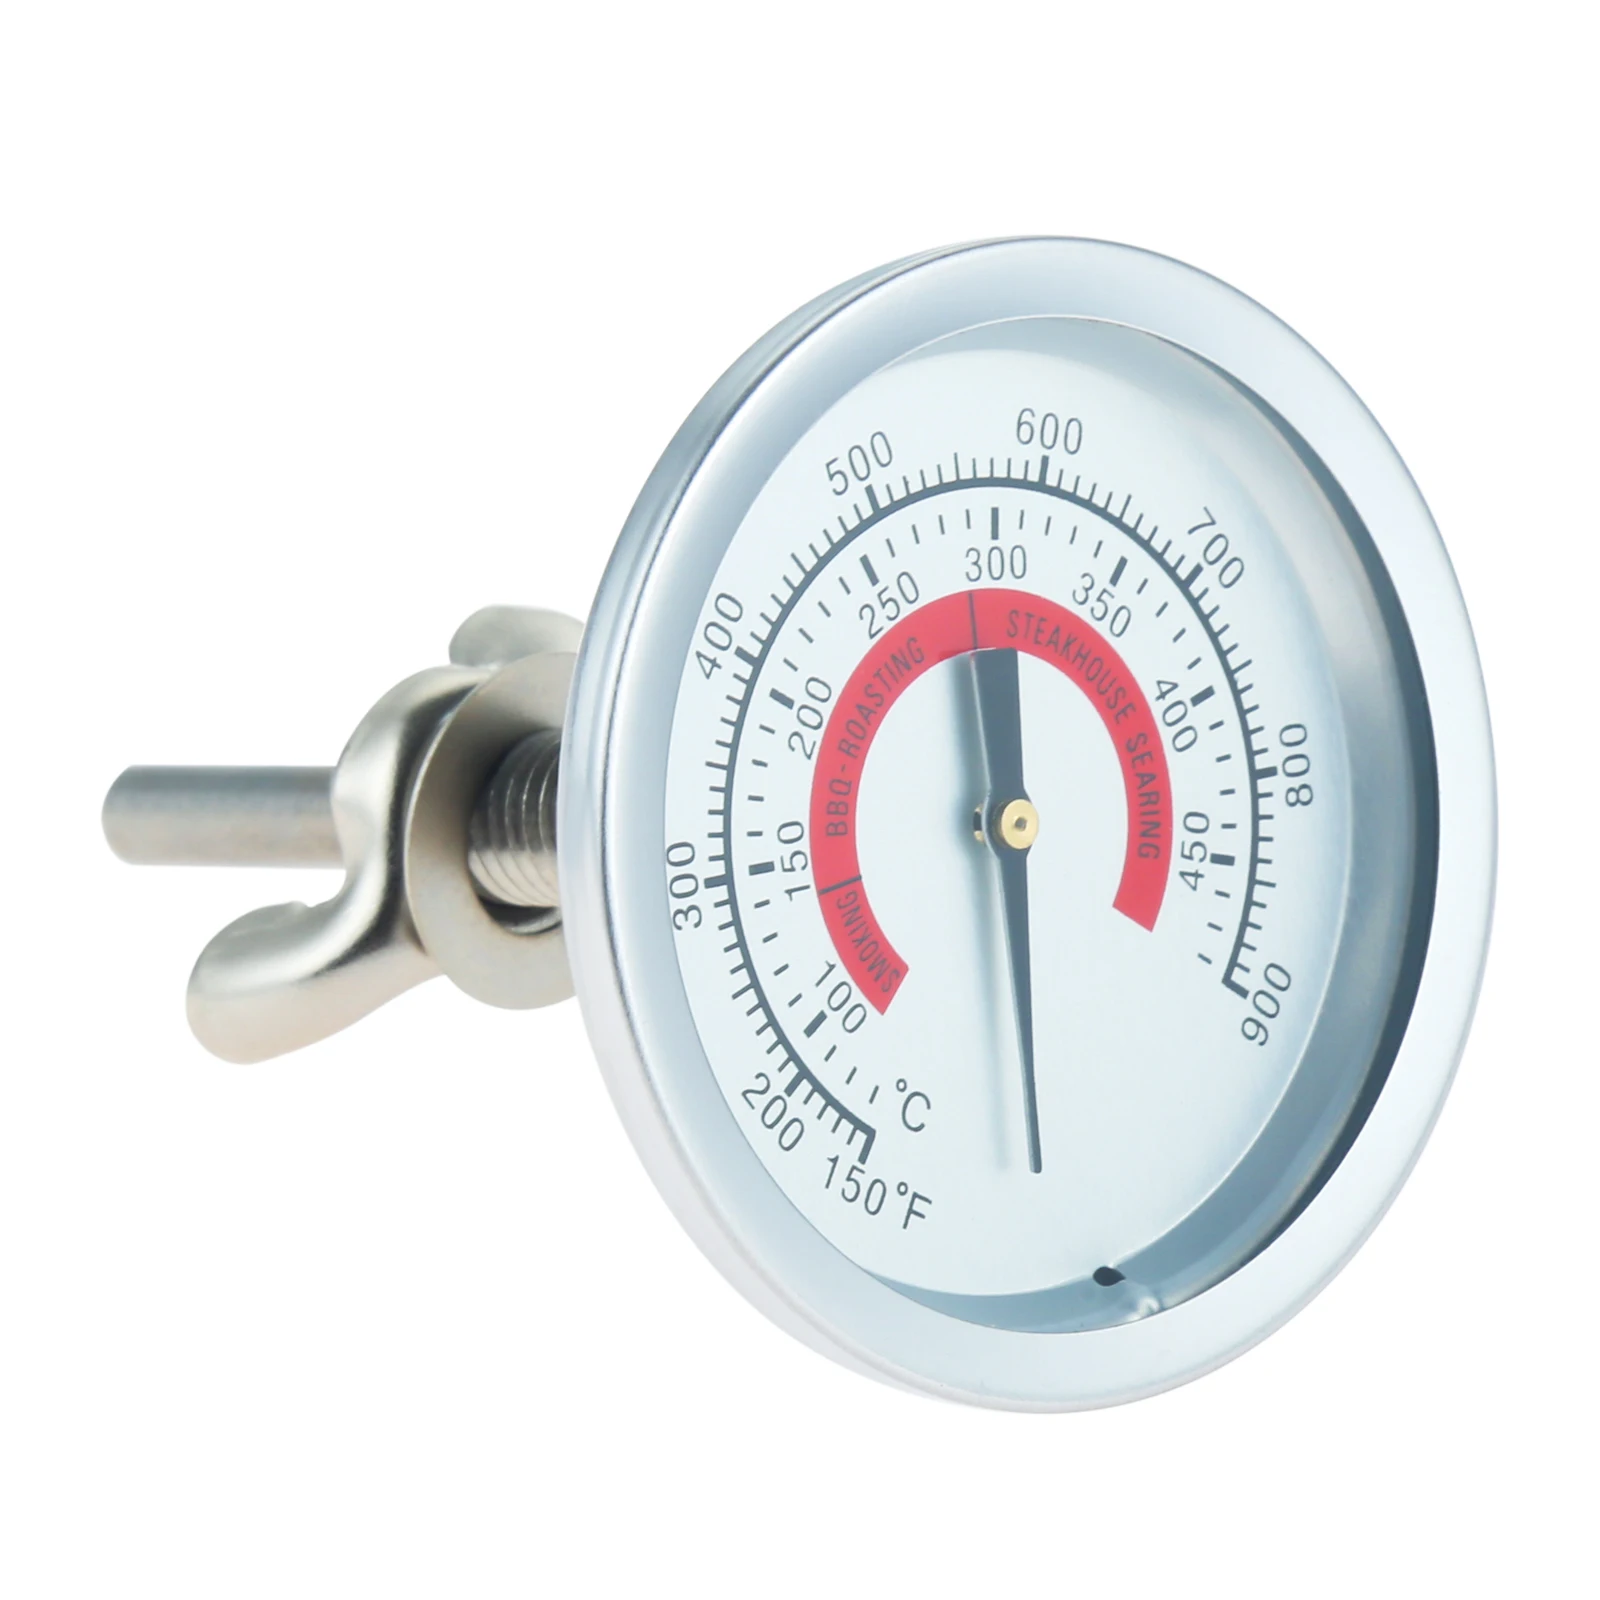 

Биметаллический измеритель температуры для барбекю, гриля, коптильницы, термометр, индикатор 150-900 ℉ 100-450 ℃, кухонный инструмент, контроль нагрева выпечки